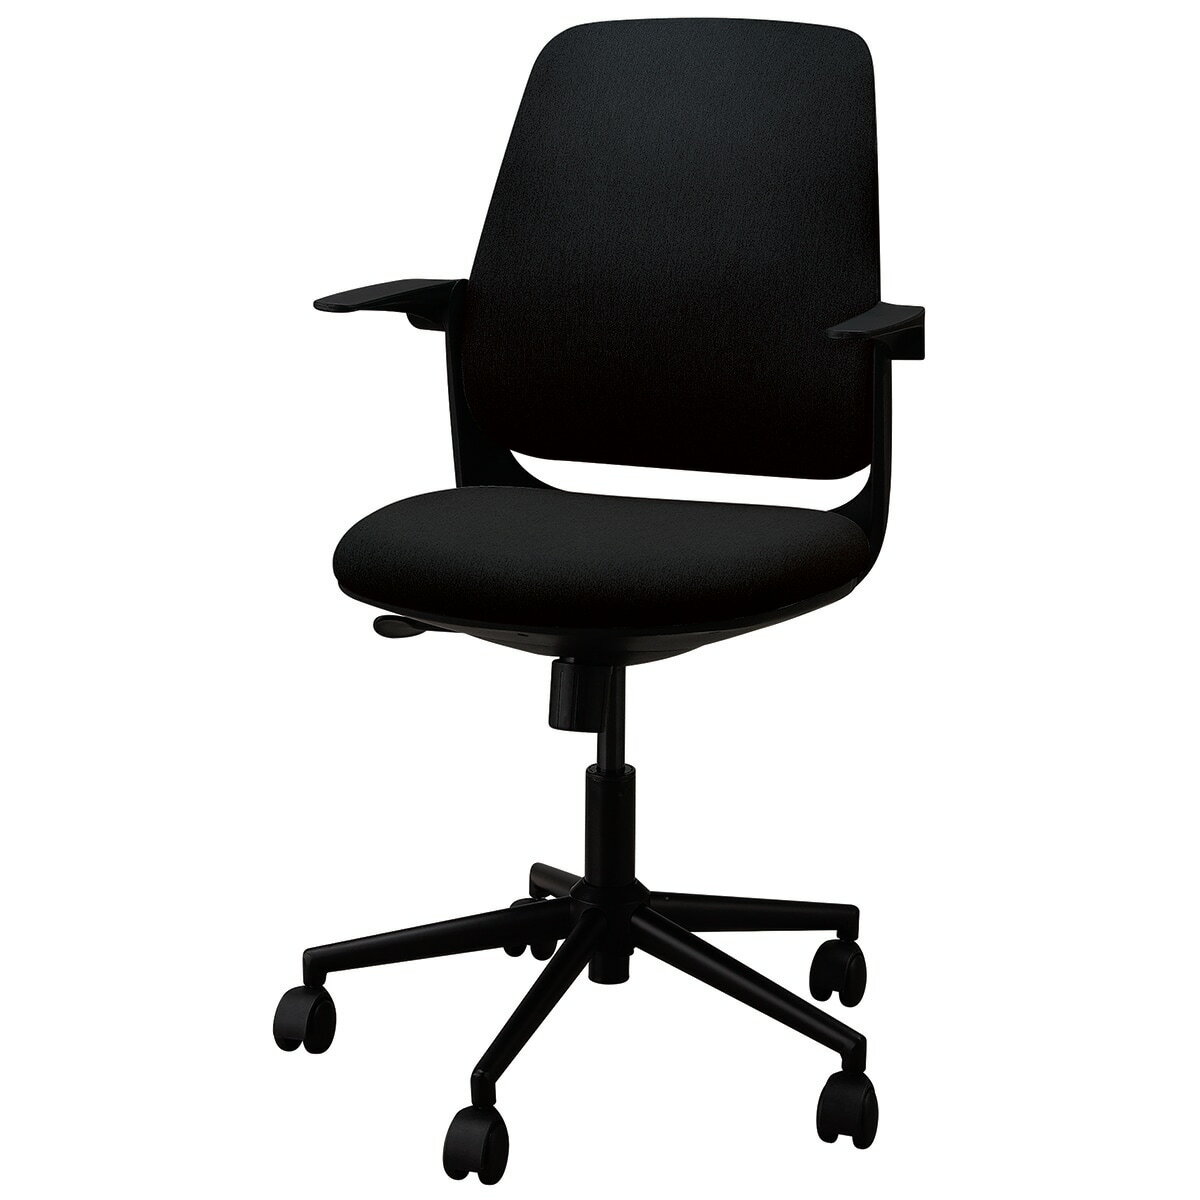 ニトリのオフィスチェア(MS7008 BK)   【1年保証】(チェア・椅子)